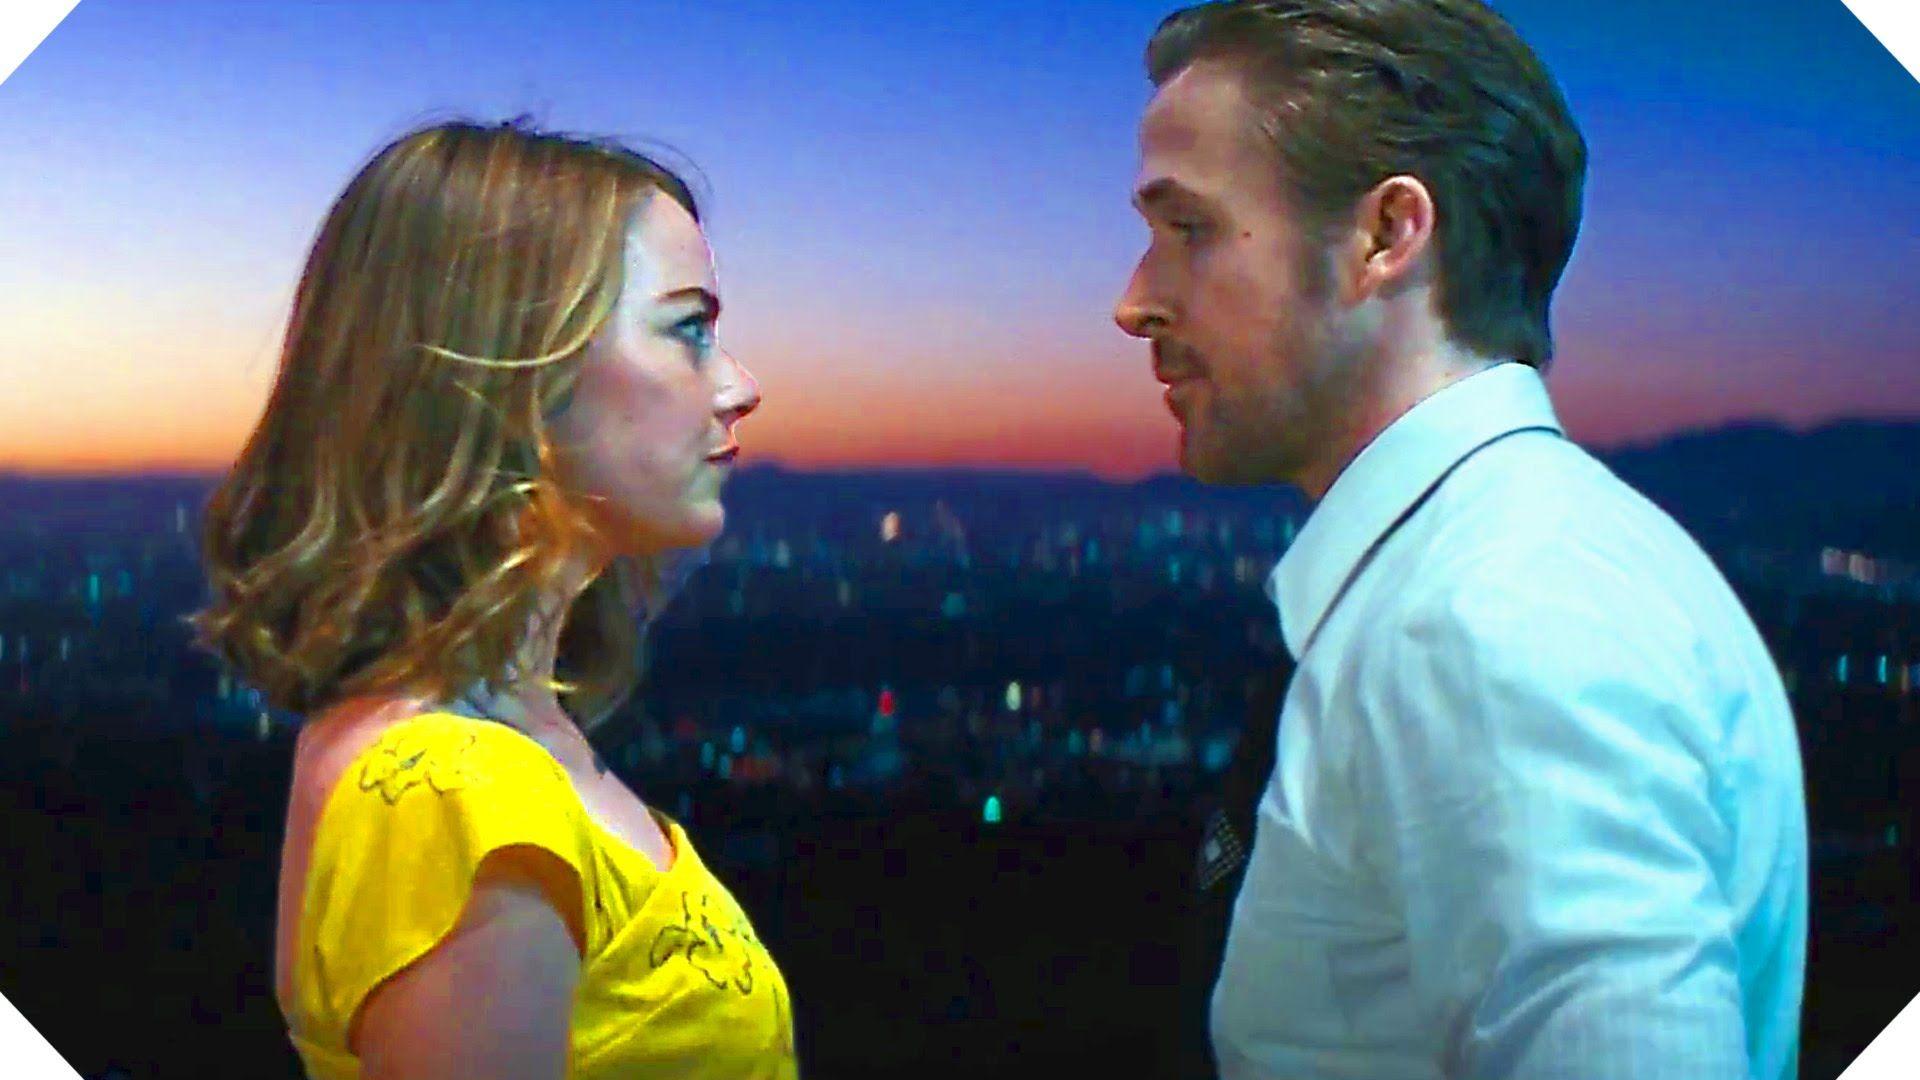 LA LA LAND Movie TRAILER # 2 Emma Stone, Ryan Gosling